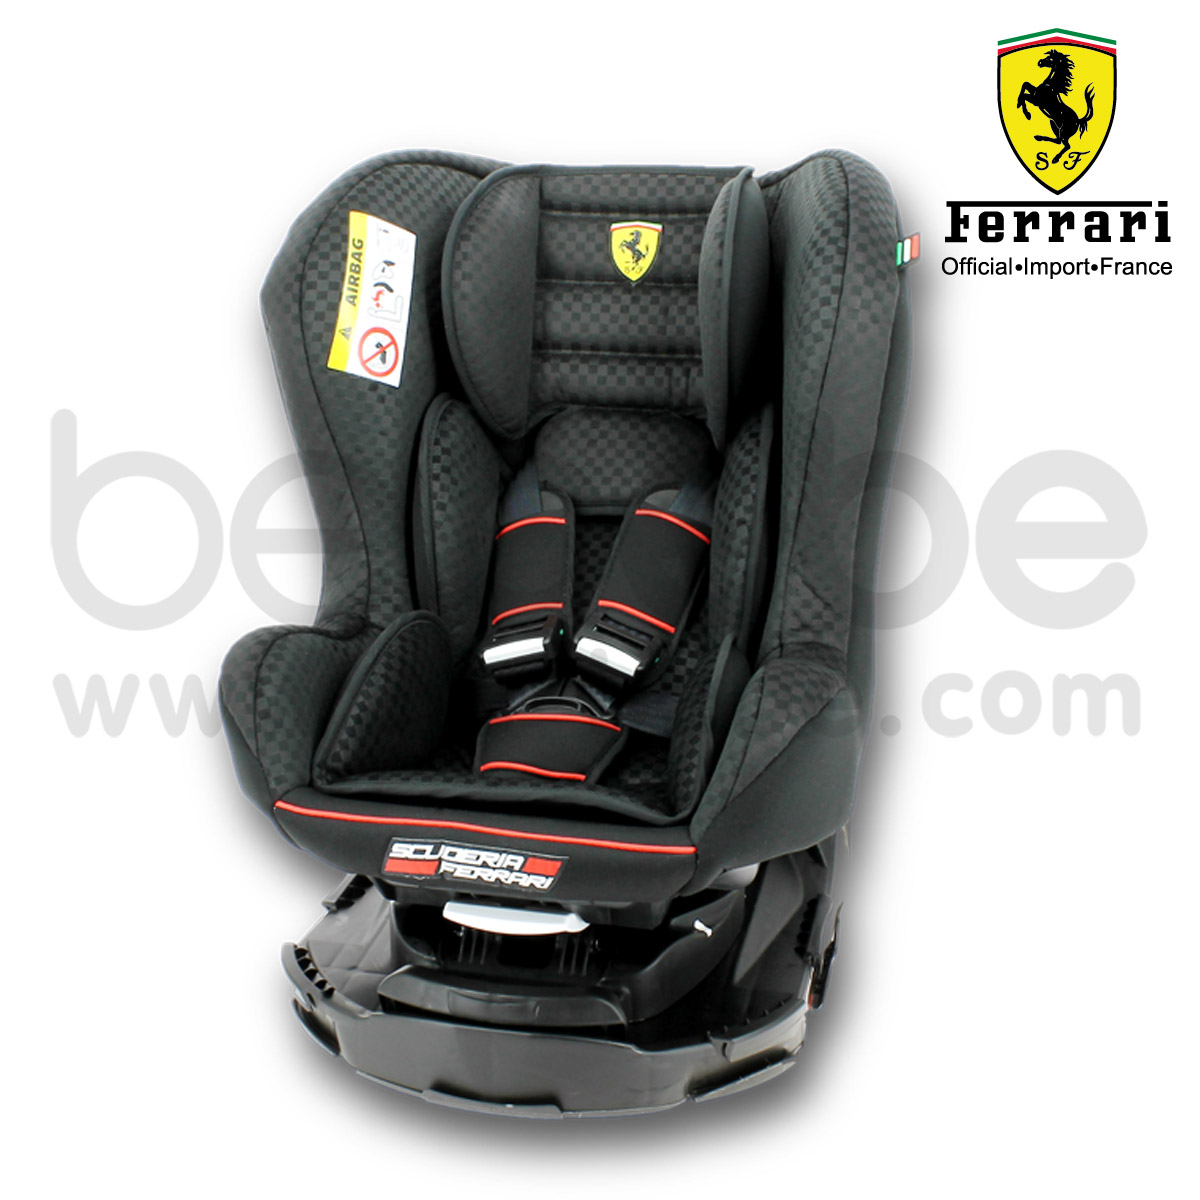 Ferrari : คาร์ซีท Revo 360 (ดำ) แถม รถเข็น Ferrari / Prima